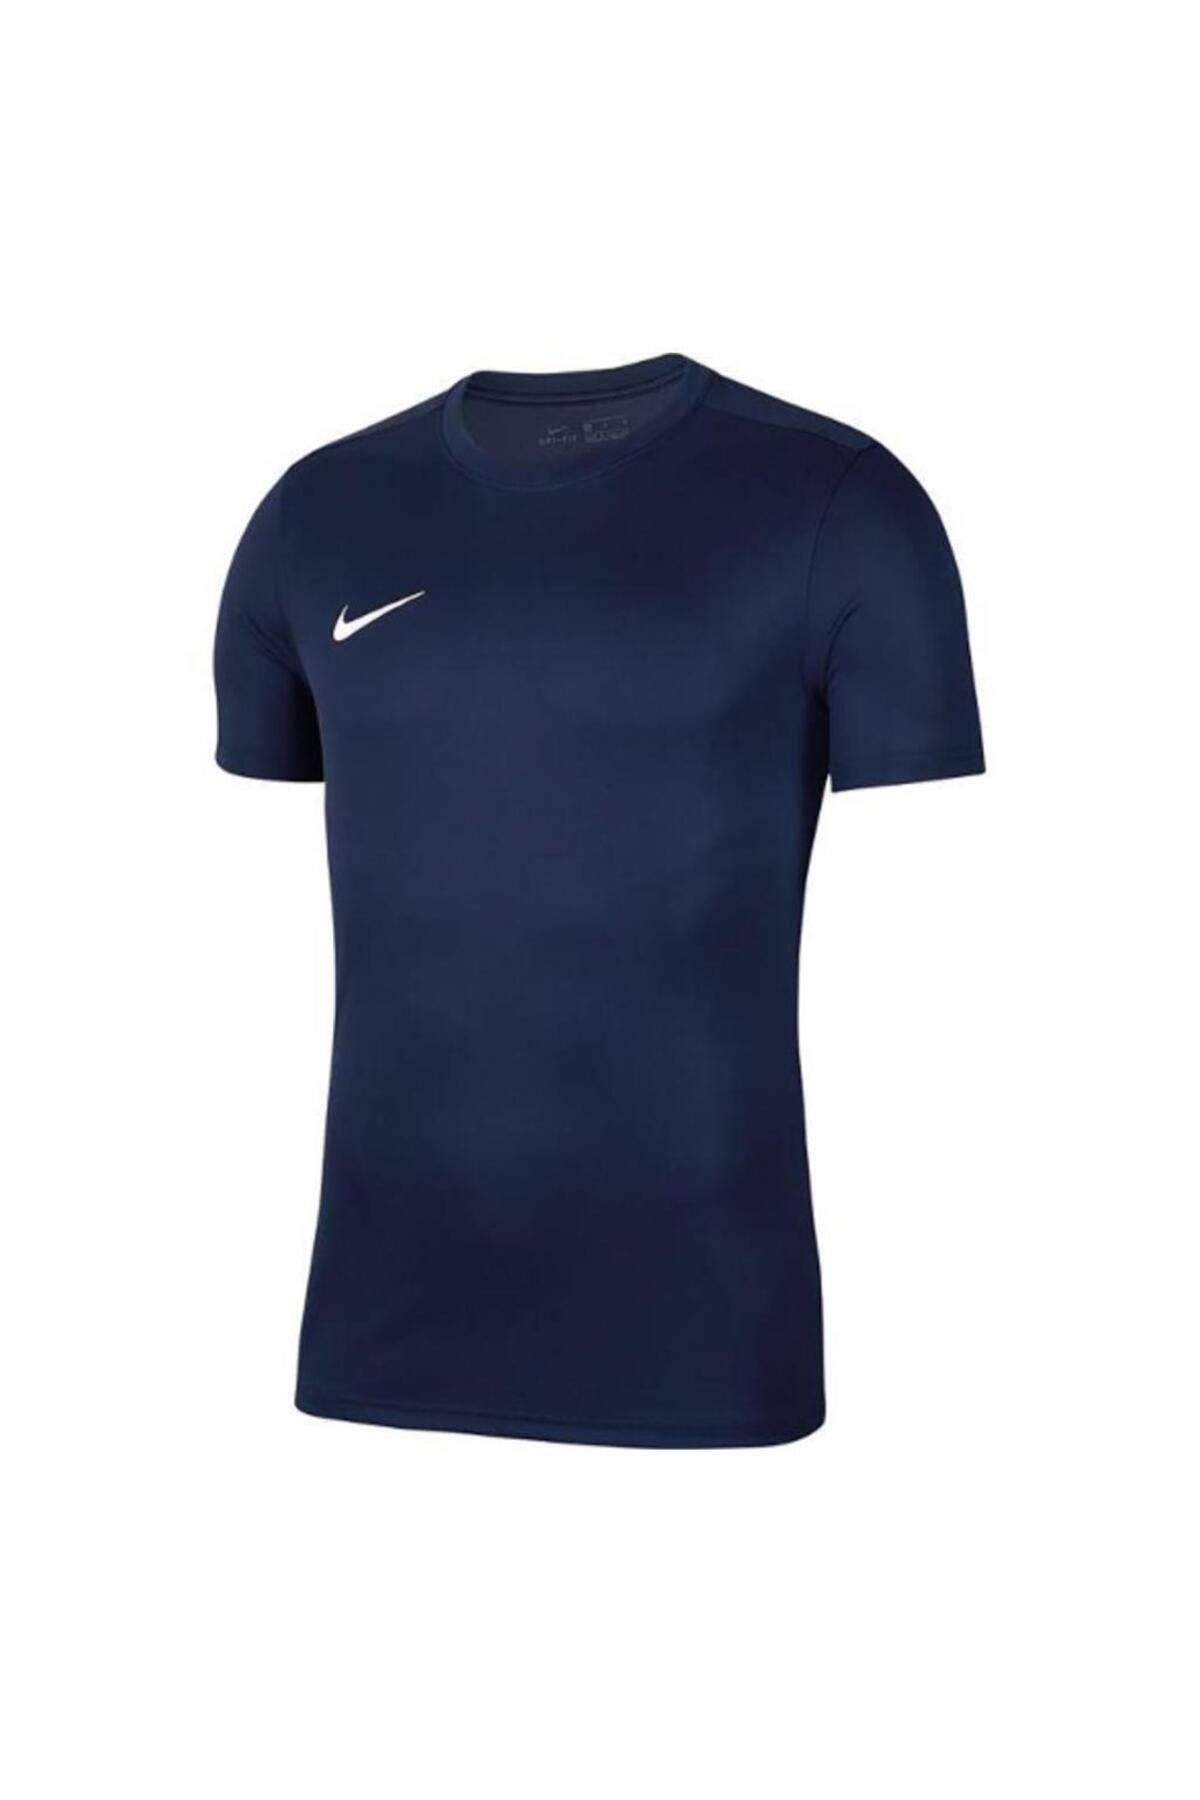 Nike T-shirt Lacivert